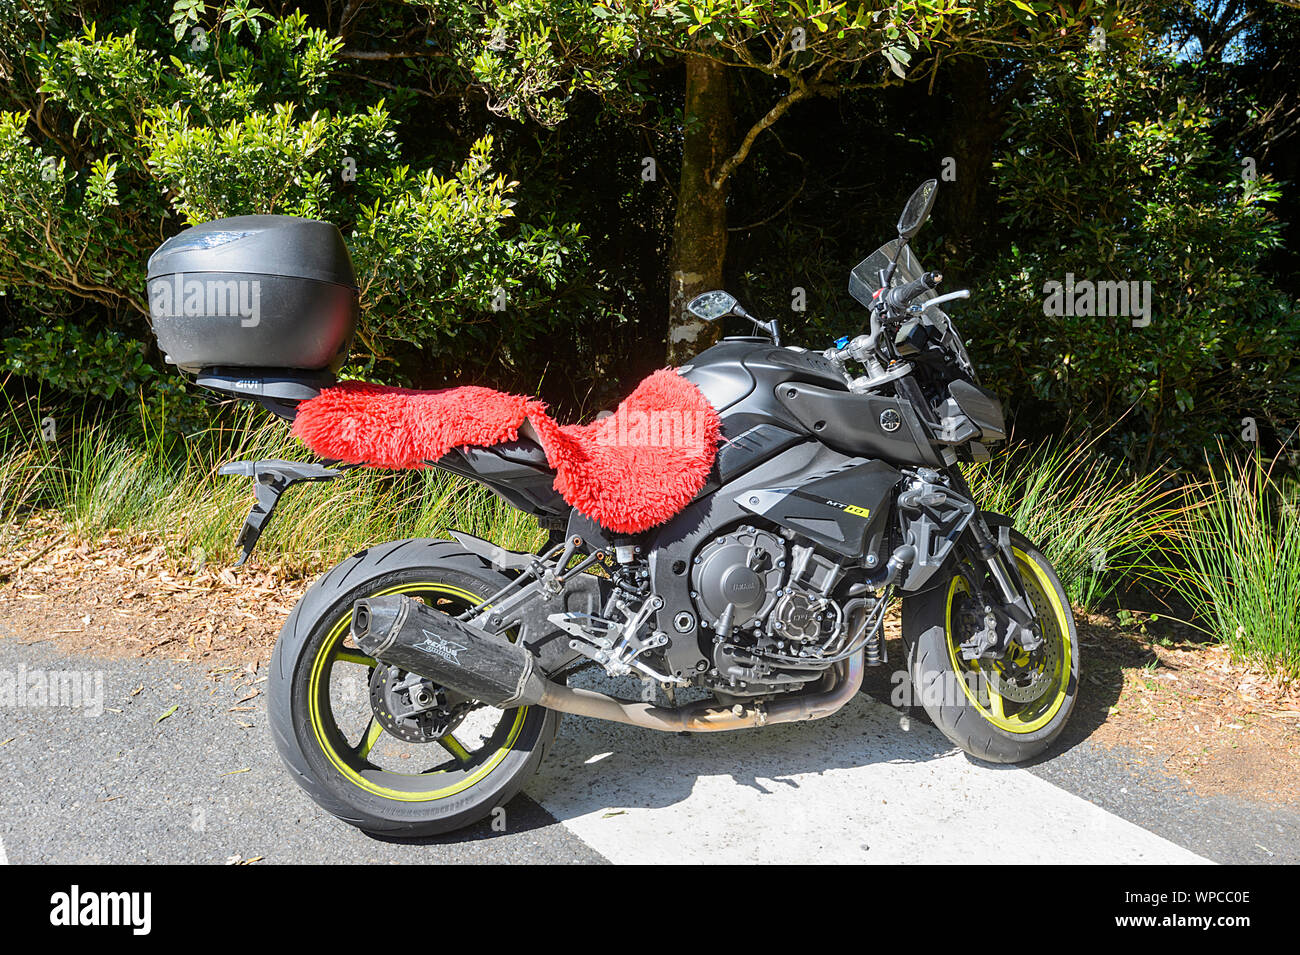 Yamaha MT-10 moto avec un tapis rouge sur le siège Photo Stock - Alamy